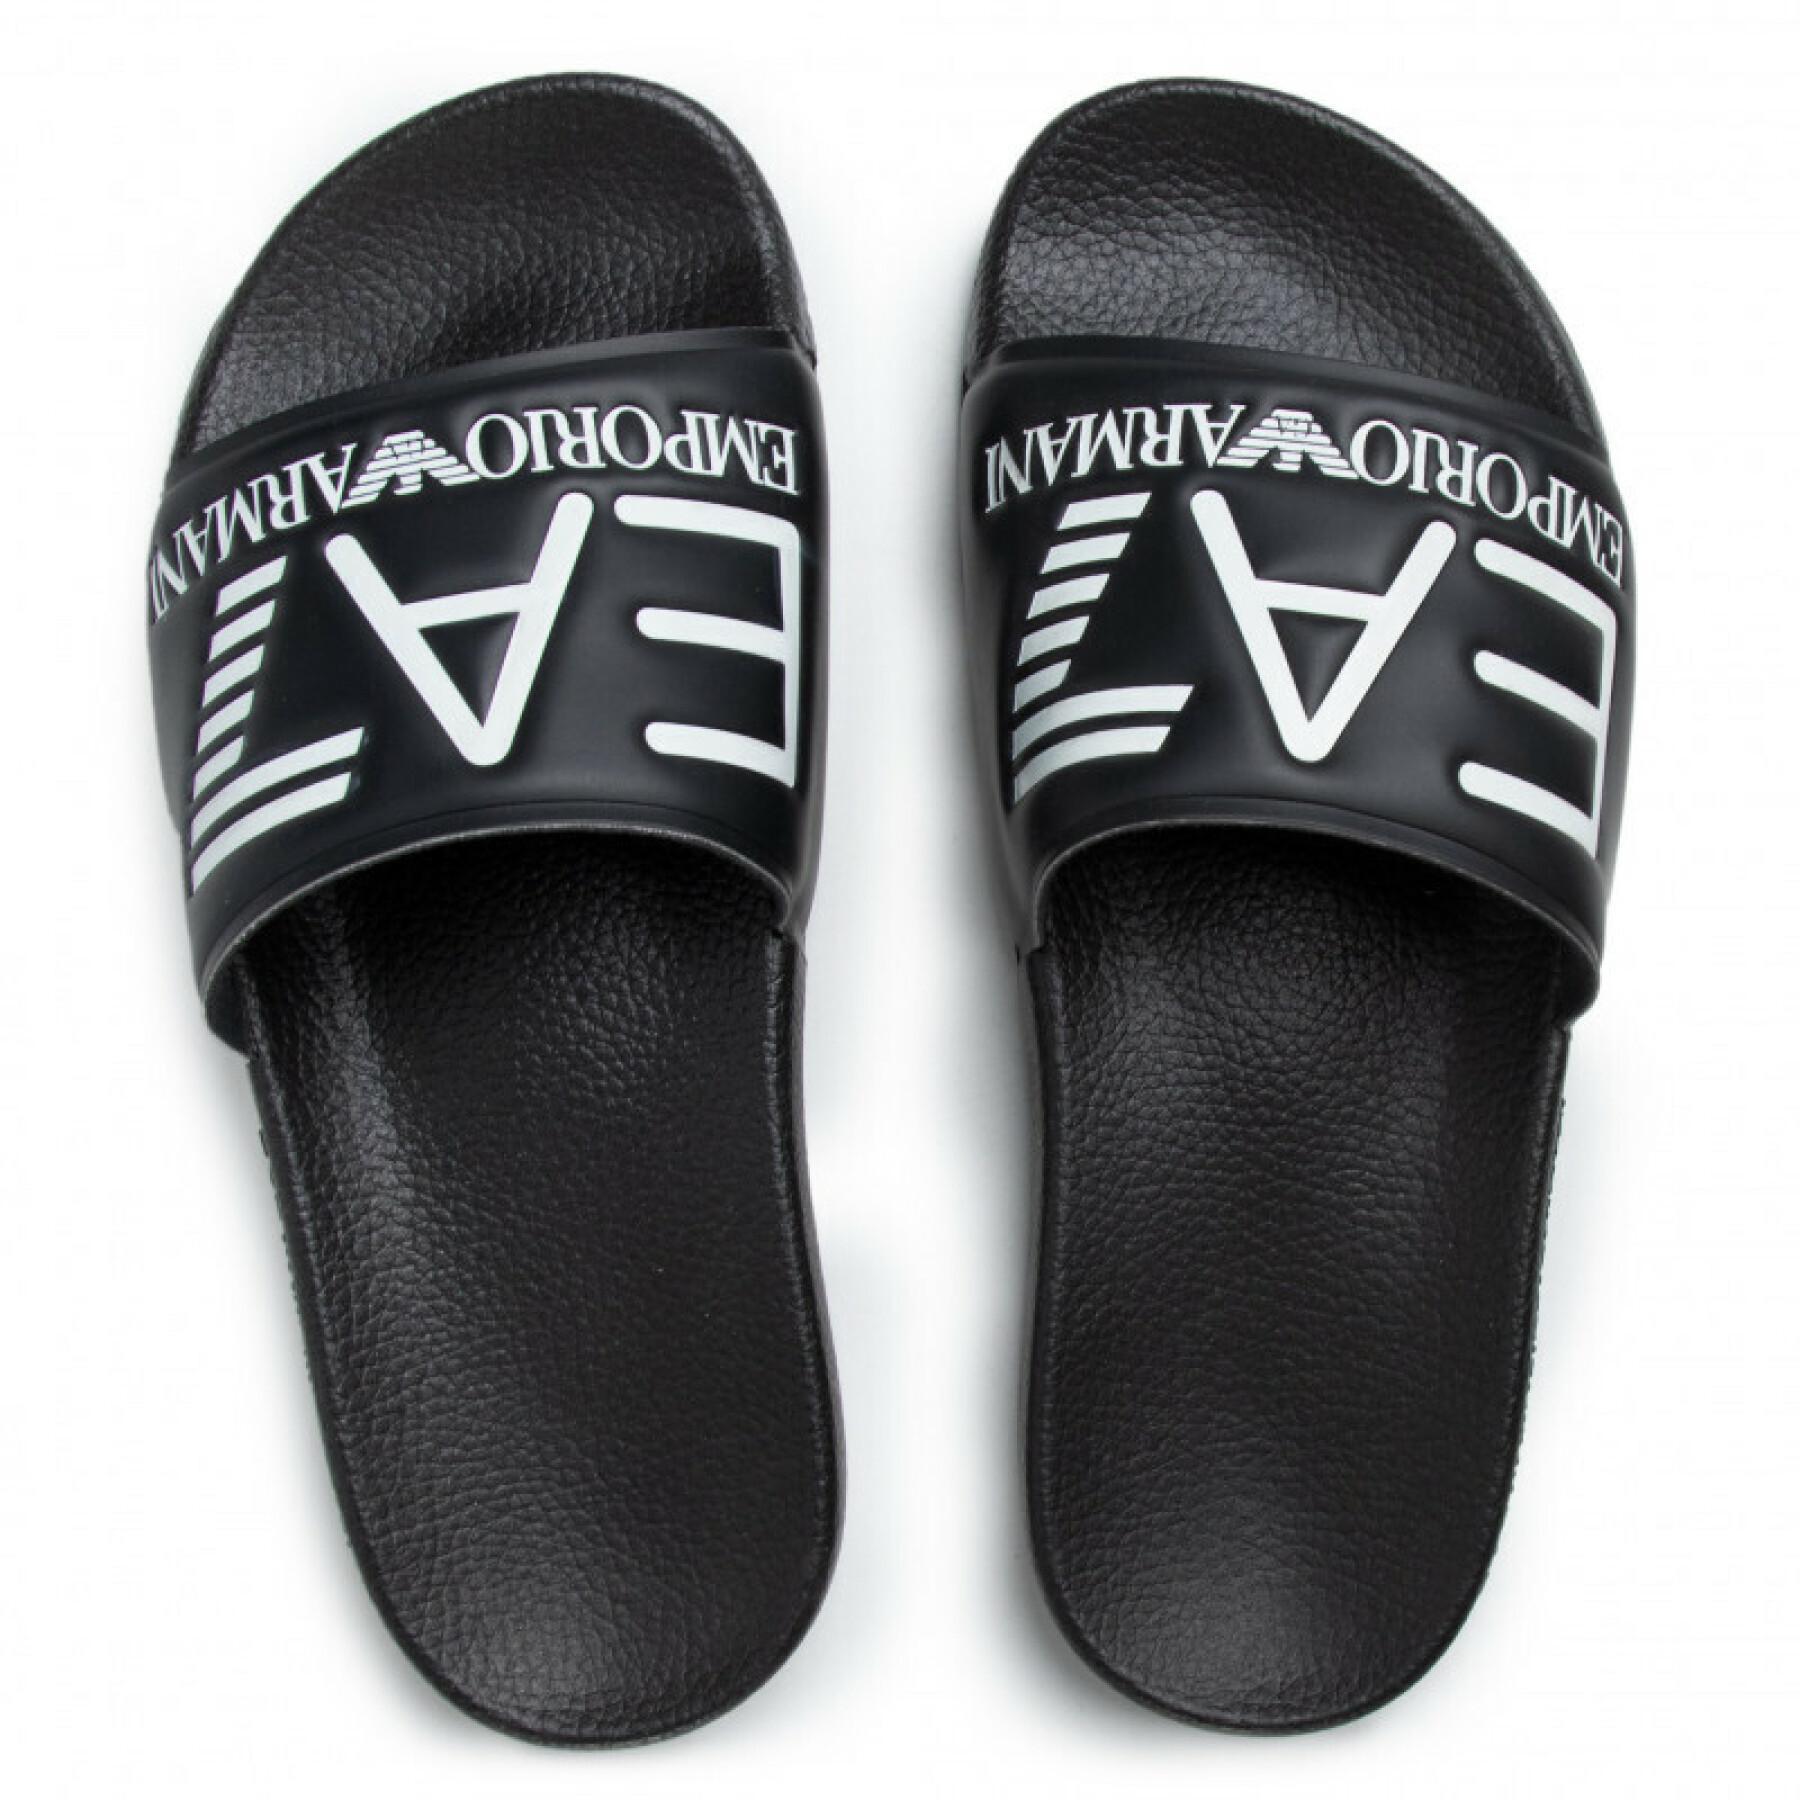 Zapatos de claqué EA7 Emporio Armani Water Sports Visible